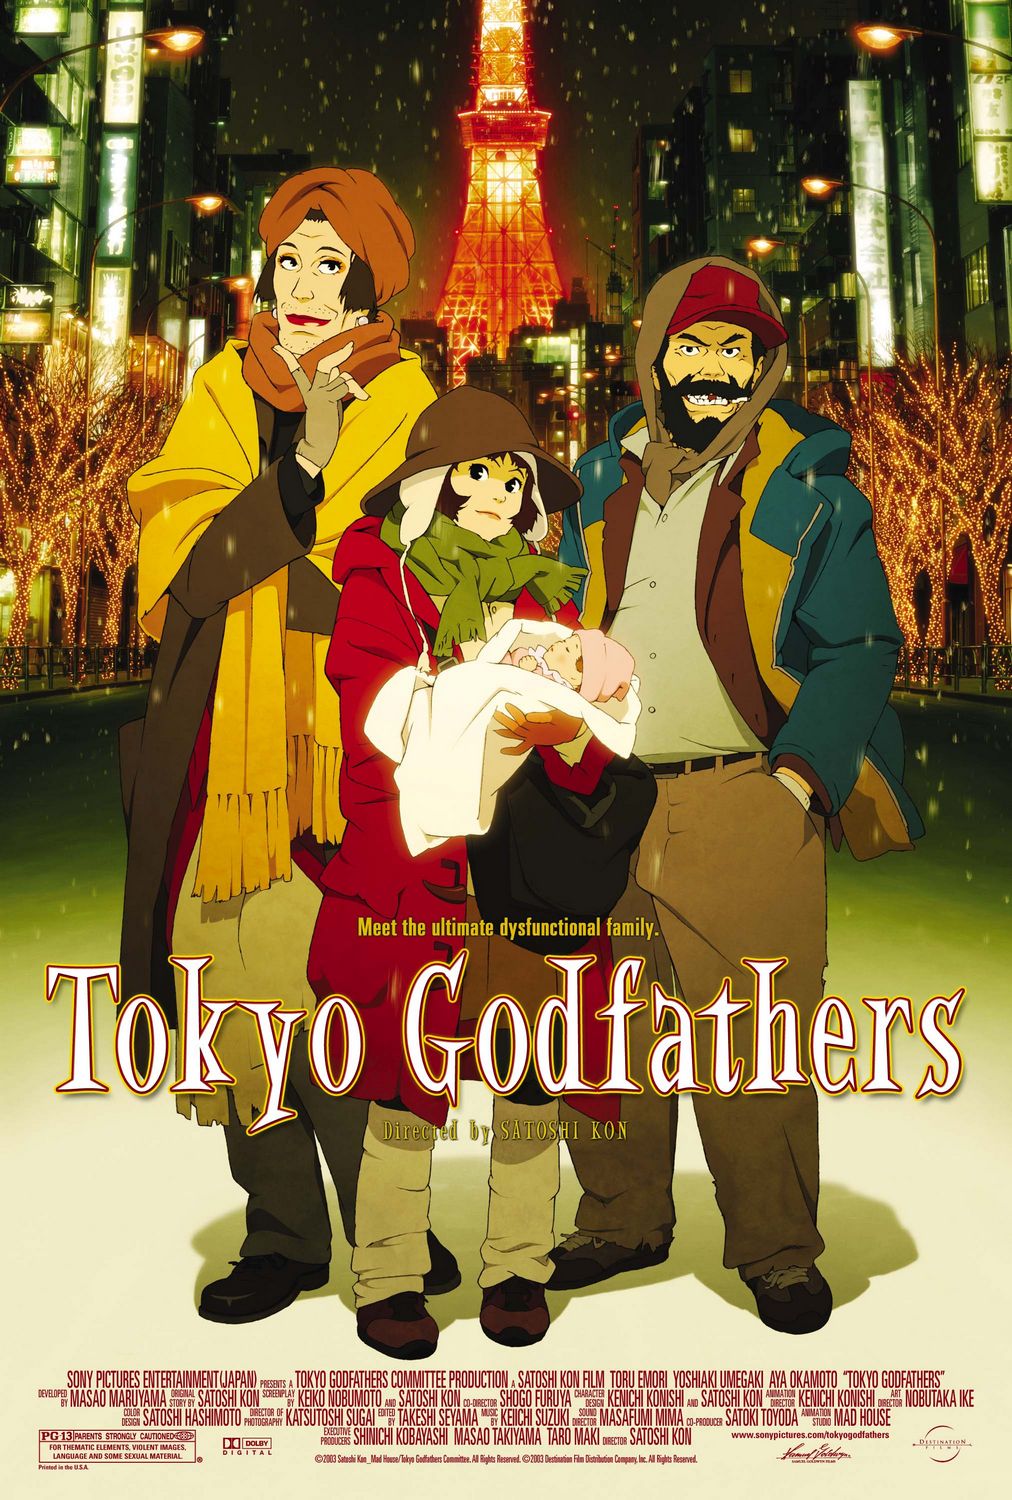 Tokyo Godfathers (2 of 3) Extra Large Movie Poster Image IMP Awards